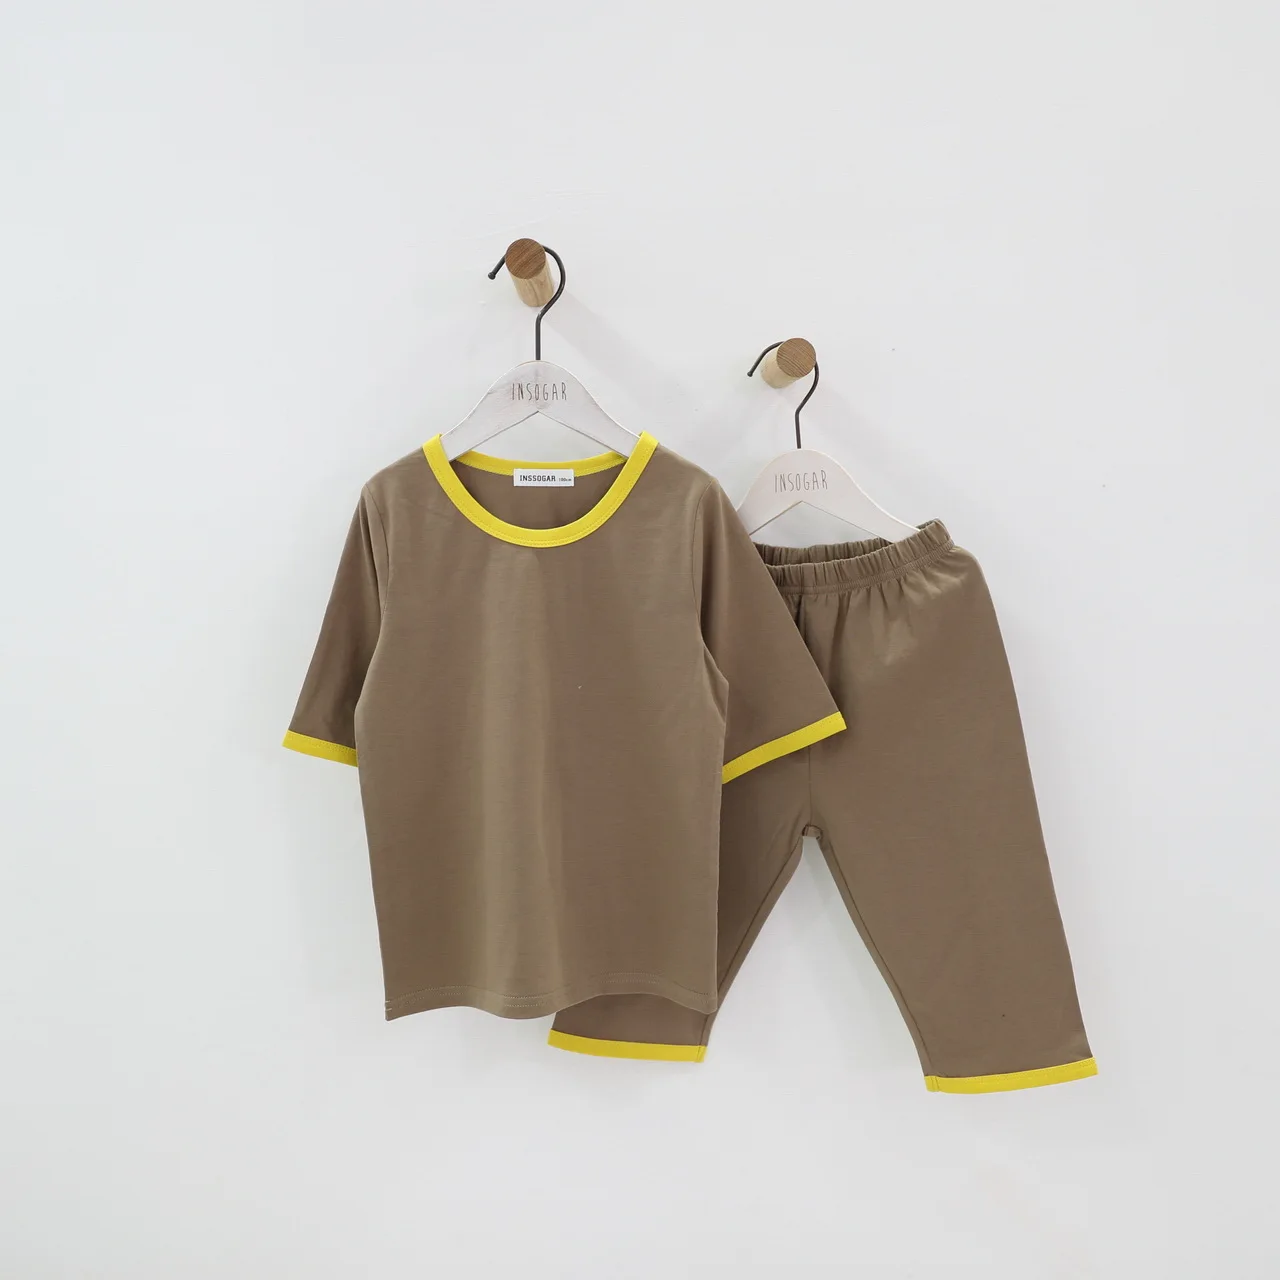 Футболка на день рождения для девочек, хлопковые пижамы Odell Летний Тонкий костюм для мальчиков, кондиционер детские летние пижамы - Цвет: Хаки